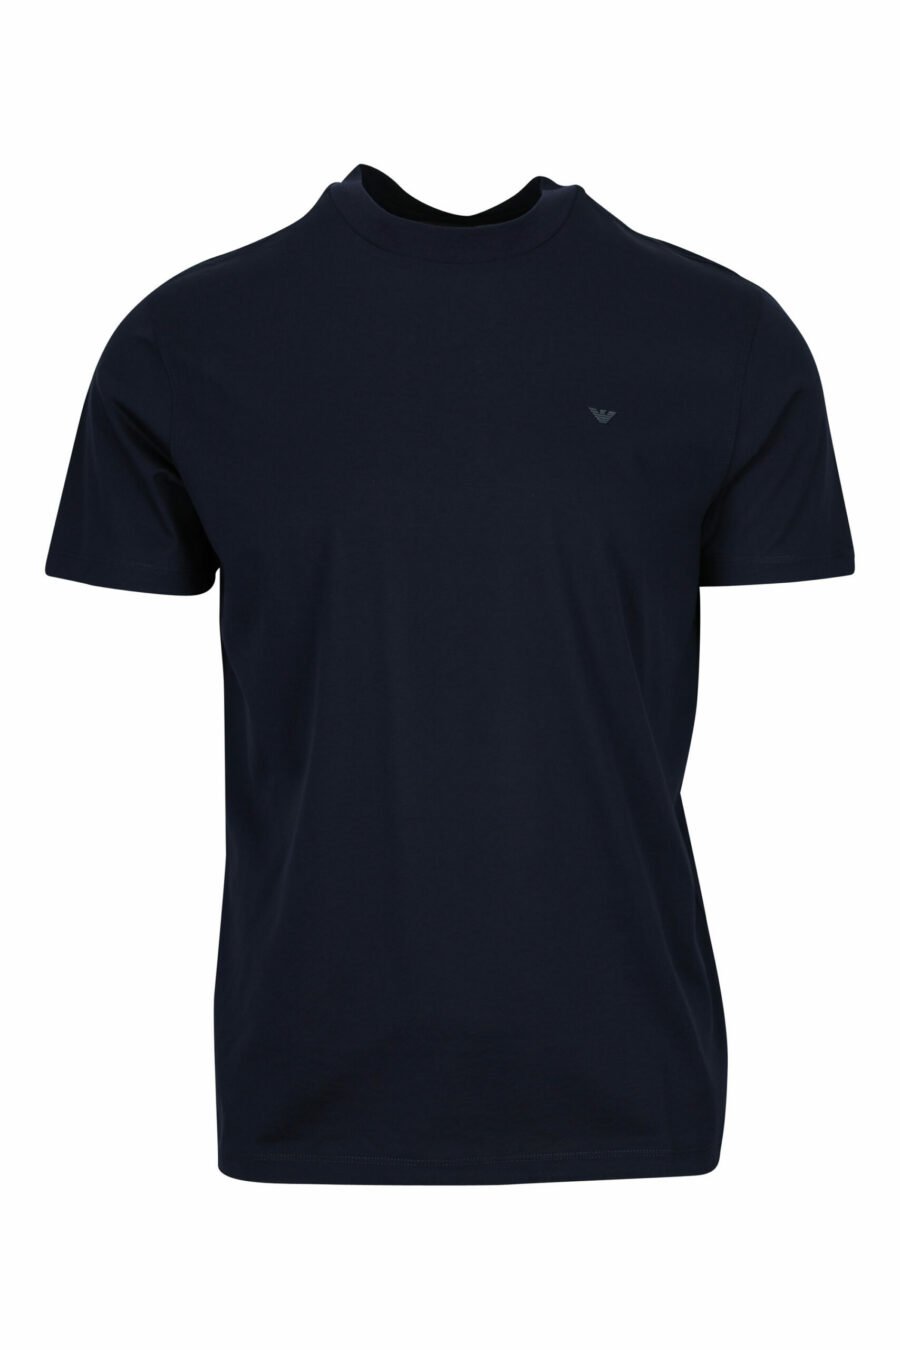 Camiseta azul oscuro con minilogo águila - 8058997155687 scaled